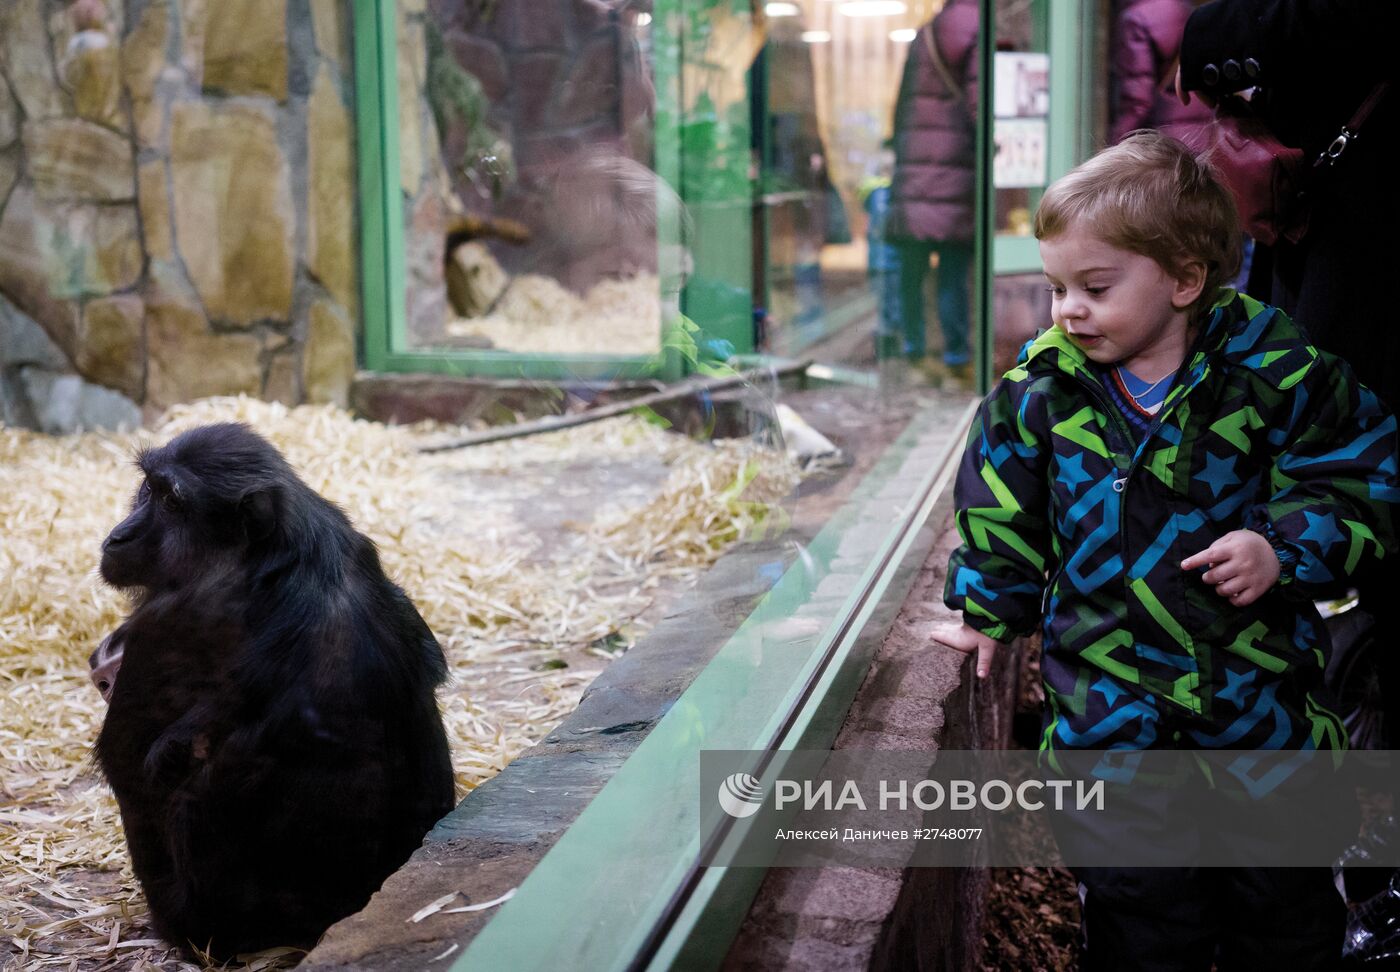 Редкая черная макака родилась в Ленинградском зоопарке